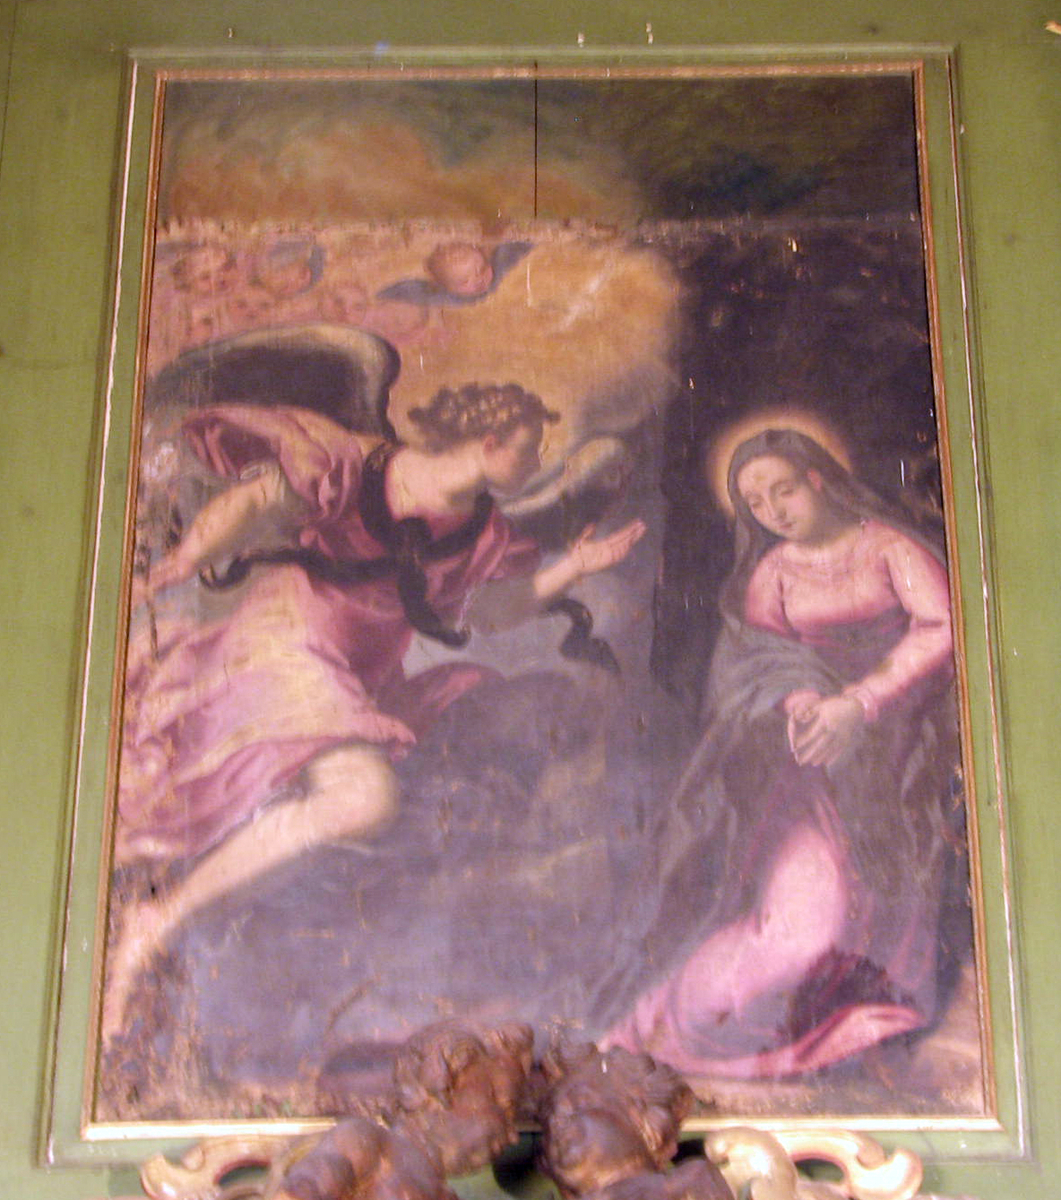 Bebudelsen; Maria m. glorie kneler tilh.; fiolett kjole, blå kappe; tilv. engelen, svevende, høyrev., utstrakt høyrehånd; småengler i lysglans.